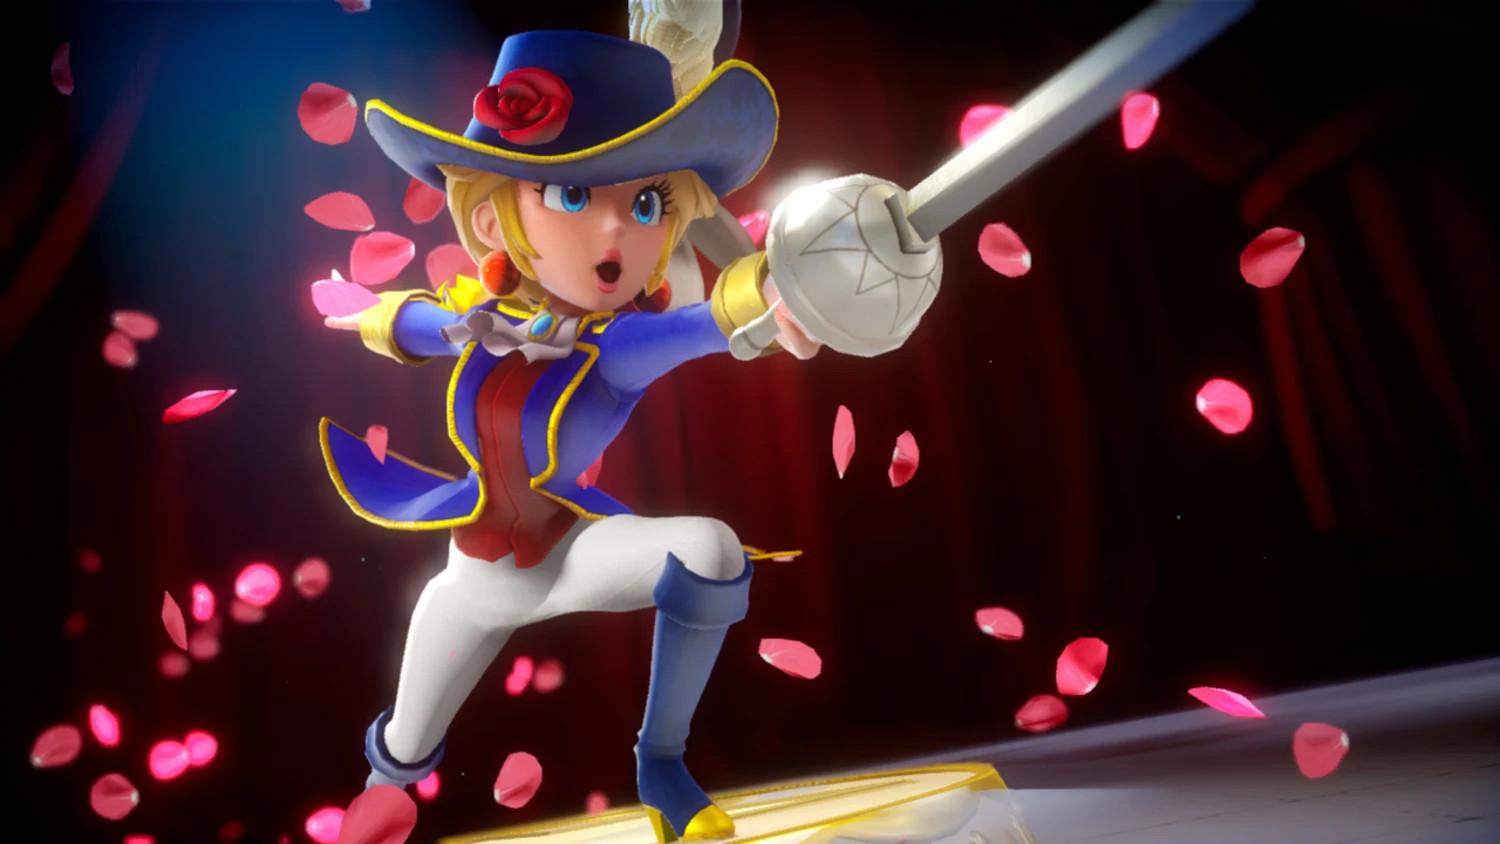 Снимок экрана из игры Принцесса Пич: Шоу-тайм, на котором Принцесса Пич указывает мечом